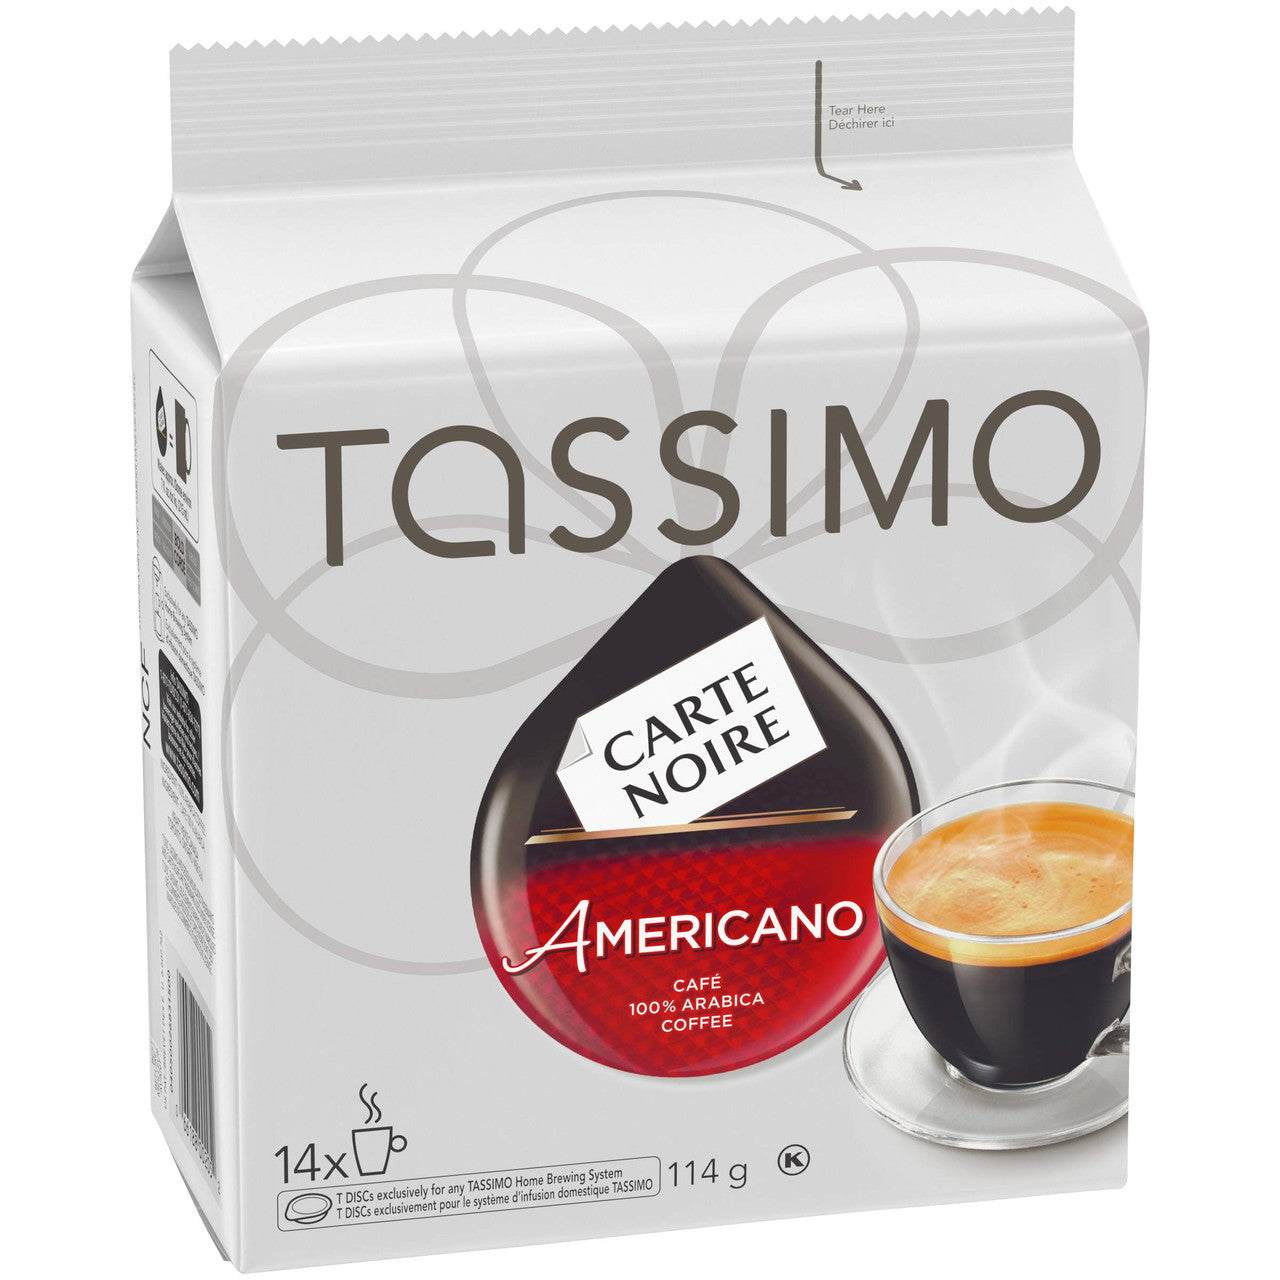 Tassimo Carte Noire Americano Coffee, Single Serve T-Discs, 14 T-Discs, 114G